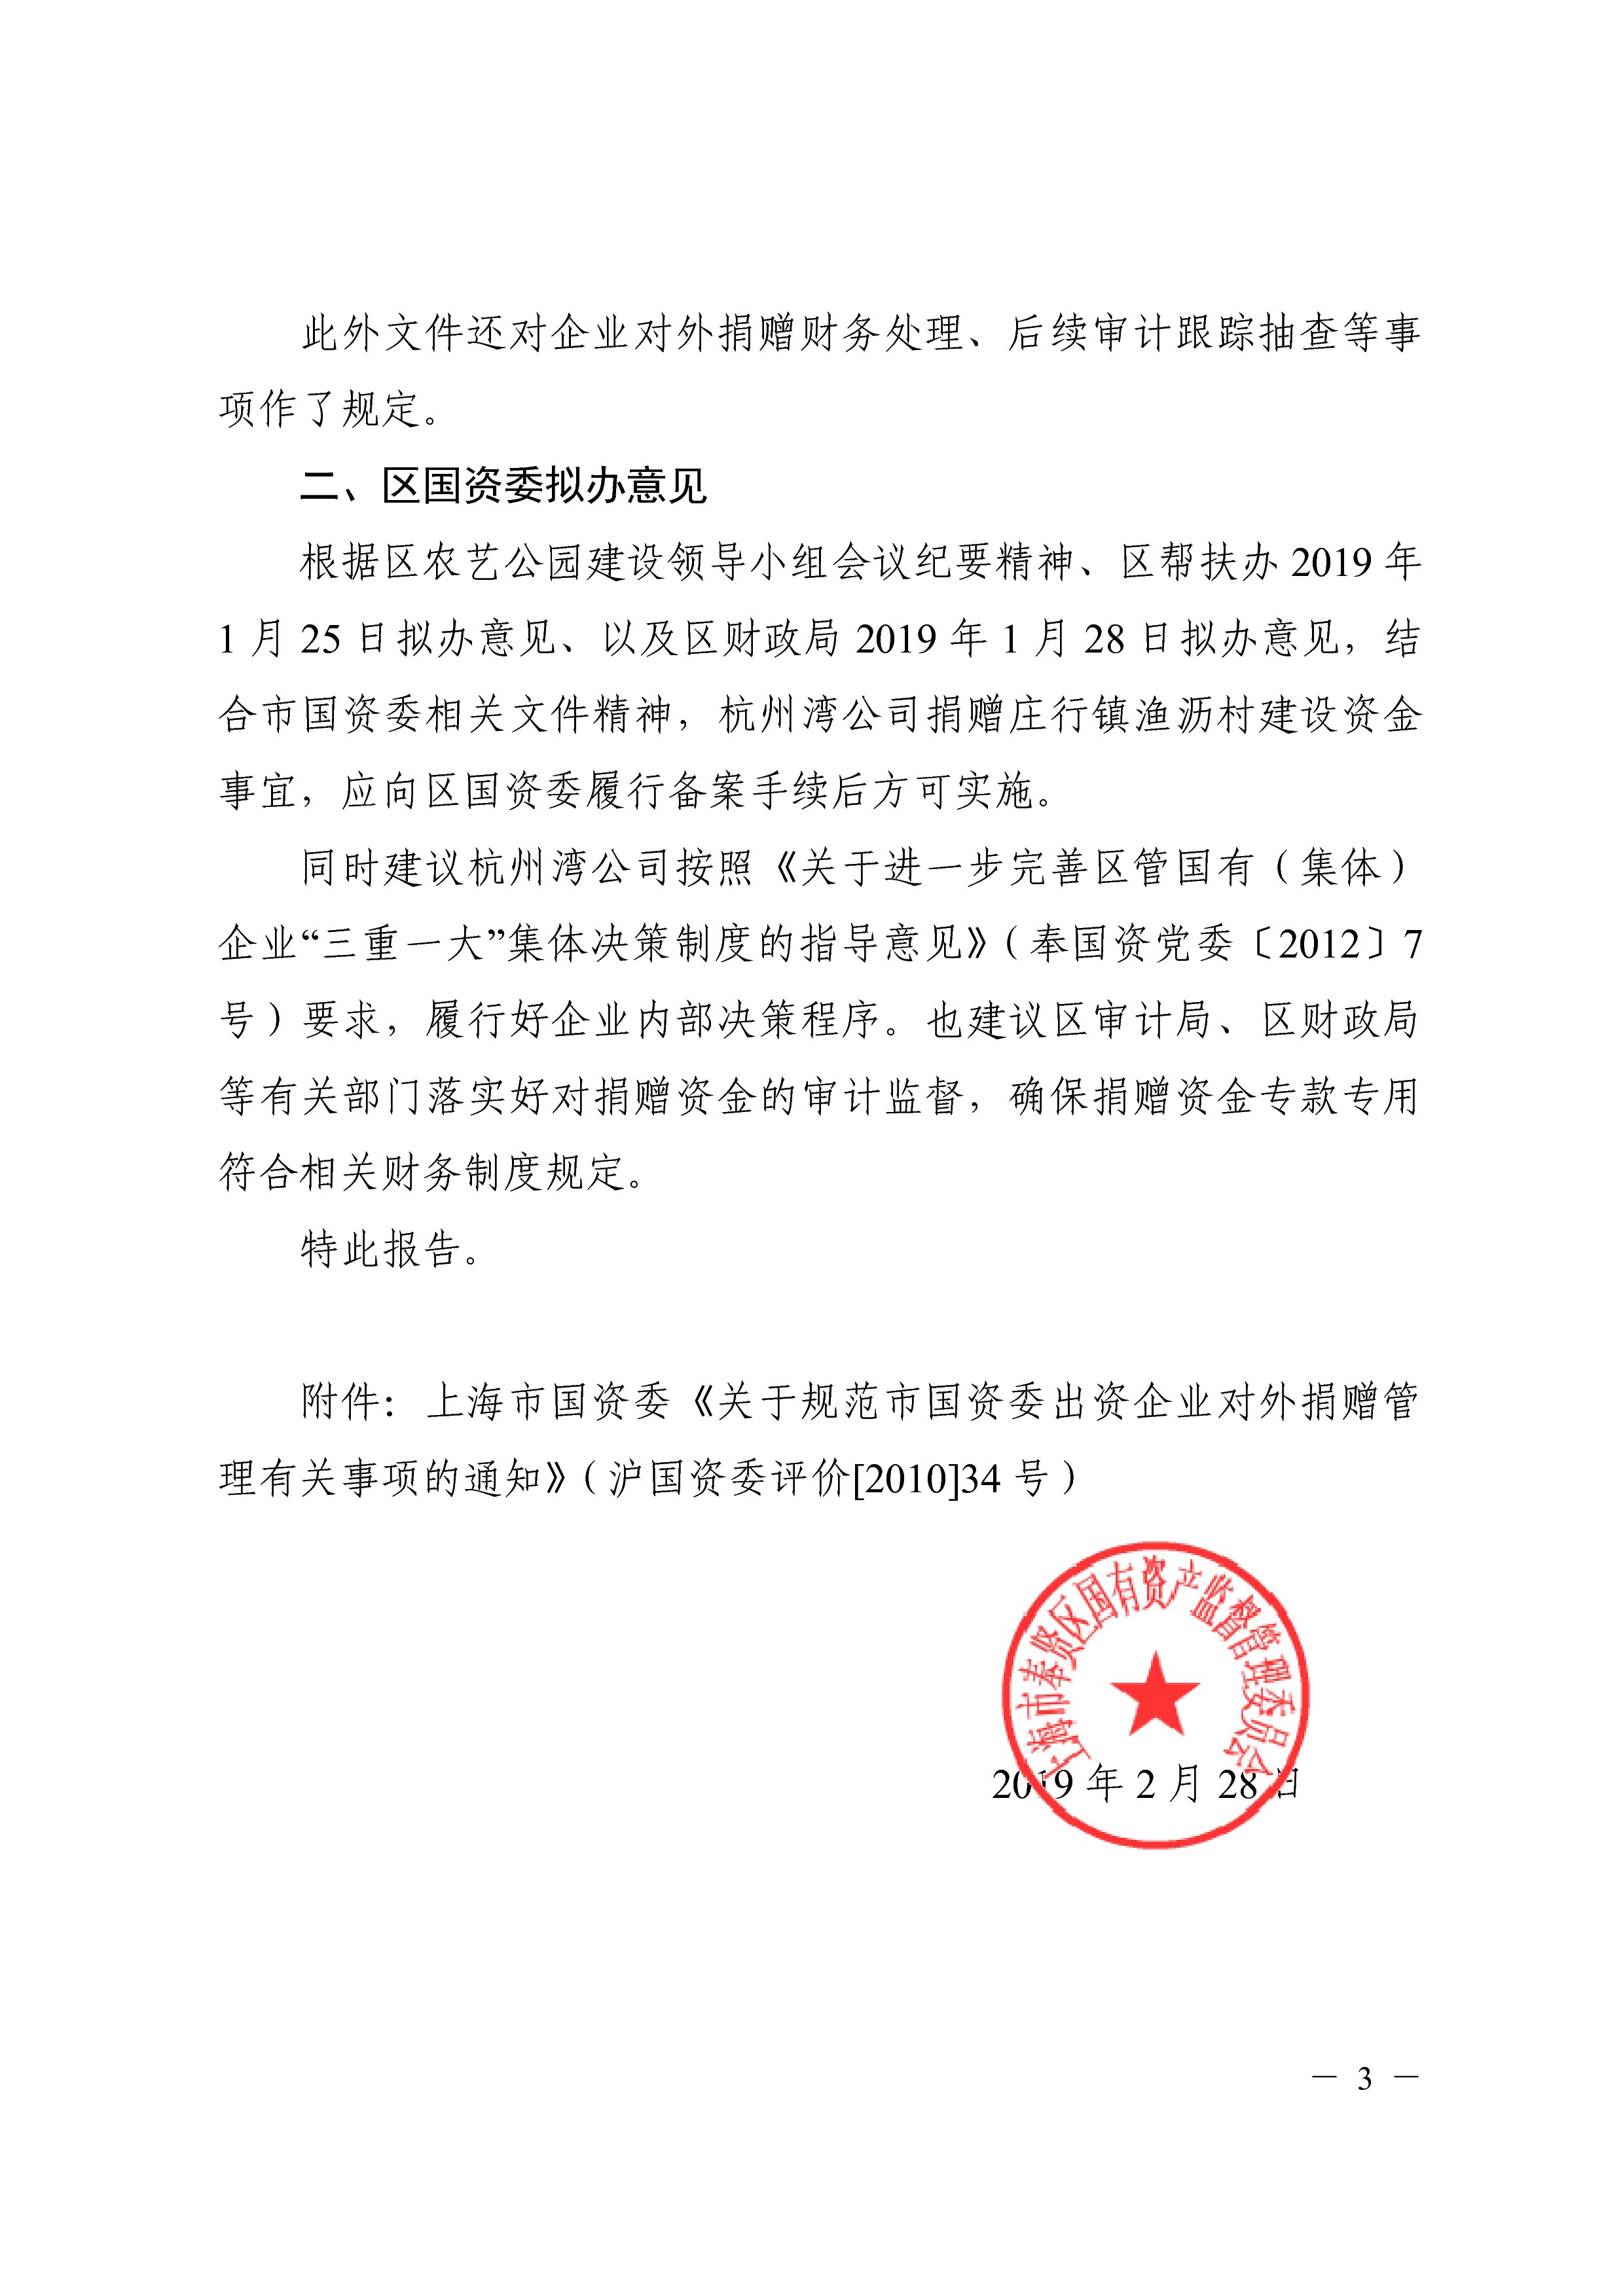 理委员会关于杭州湾公司定向捐赠请示的拟办意